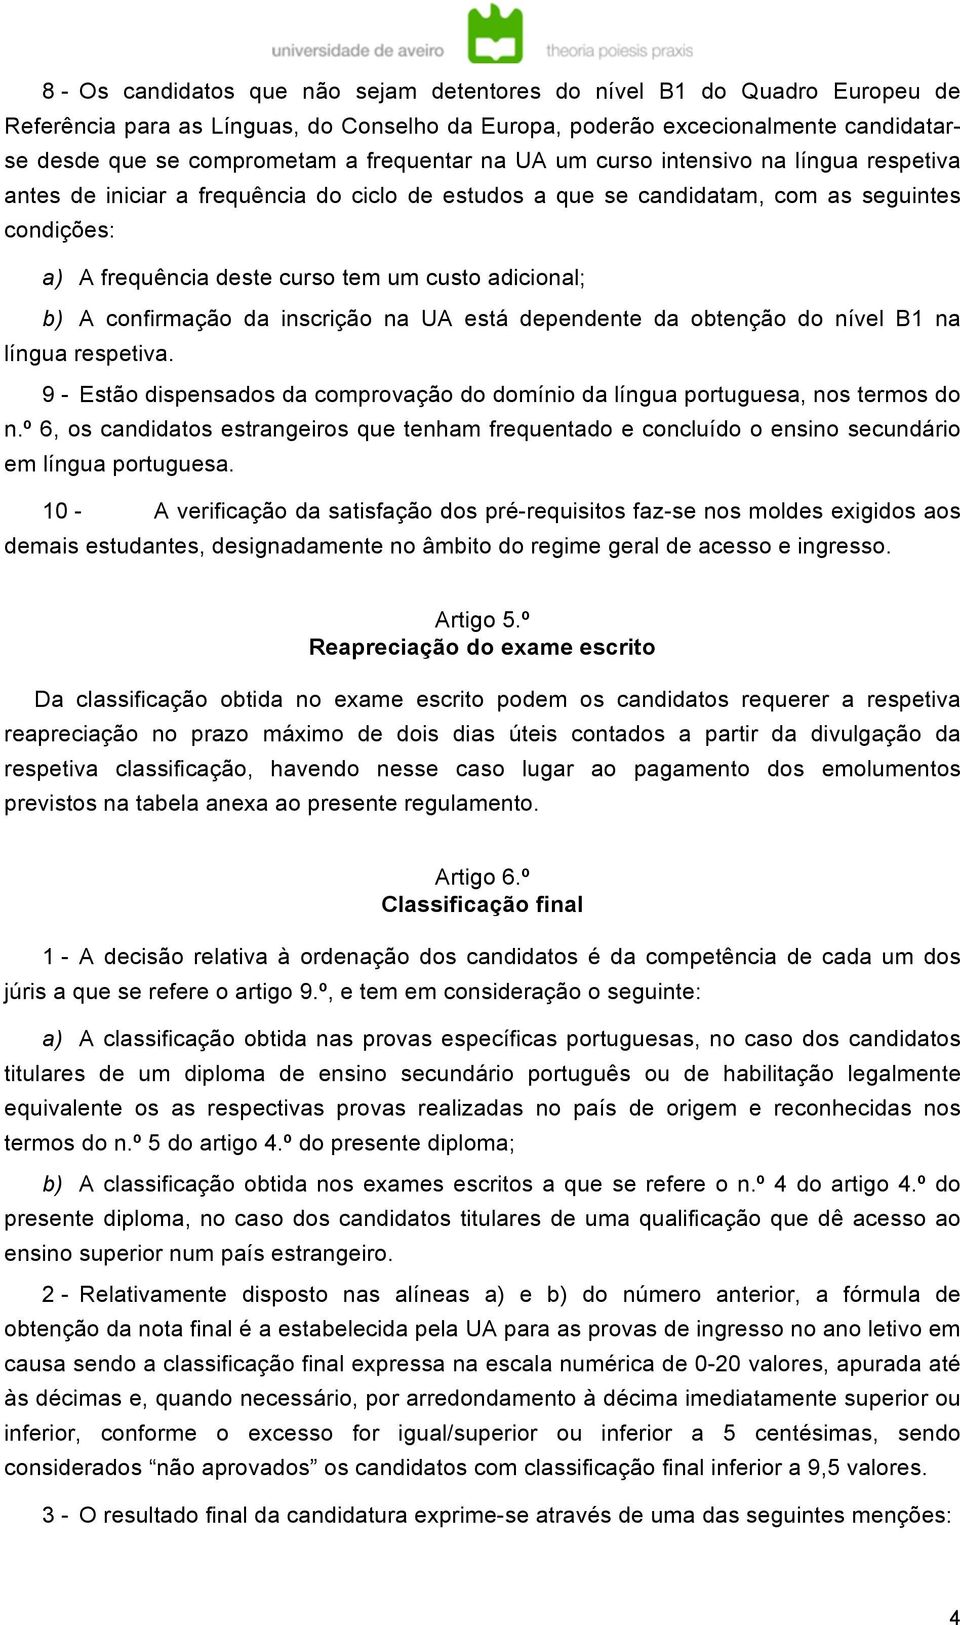 adicional; b) A confirmação da inscrição na UA está dependente da obtenção do nível B1 na língua respetiva. 9 - Estão dispensados da comprovação do domínio da língua portuguesa, nos termos do n.